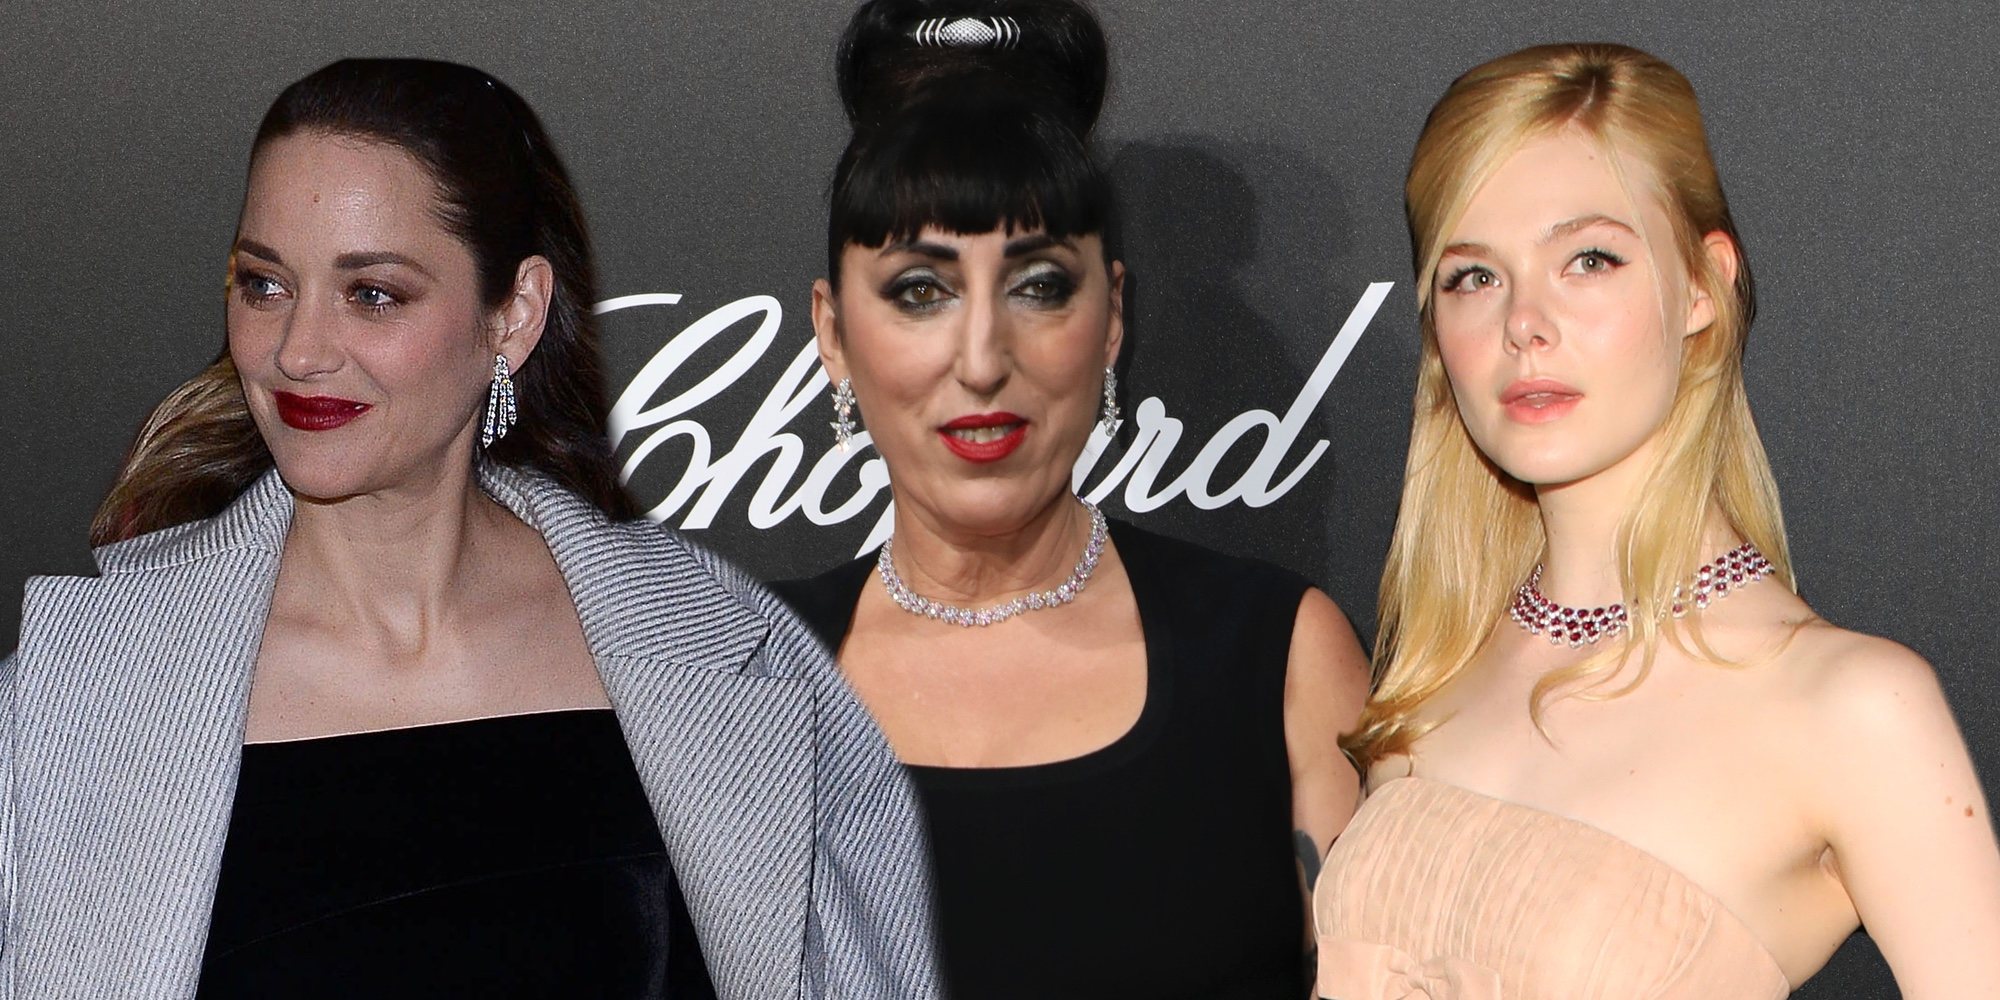 Marion Cotillard, Rossy de Palma o Elle Fanning entre las estrellas invitadas a la fiesta de Chopard en Cannes